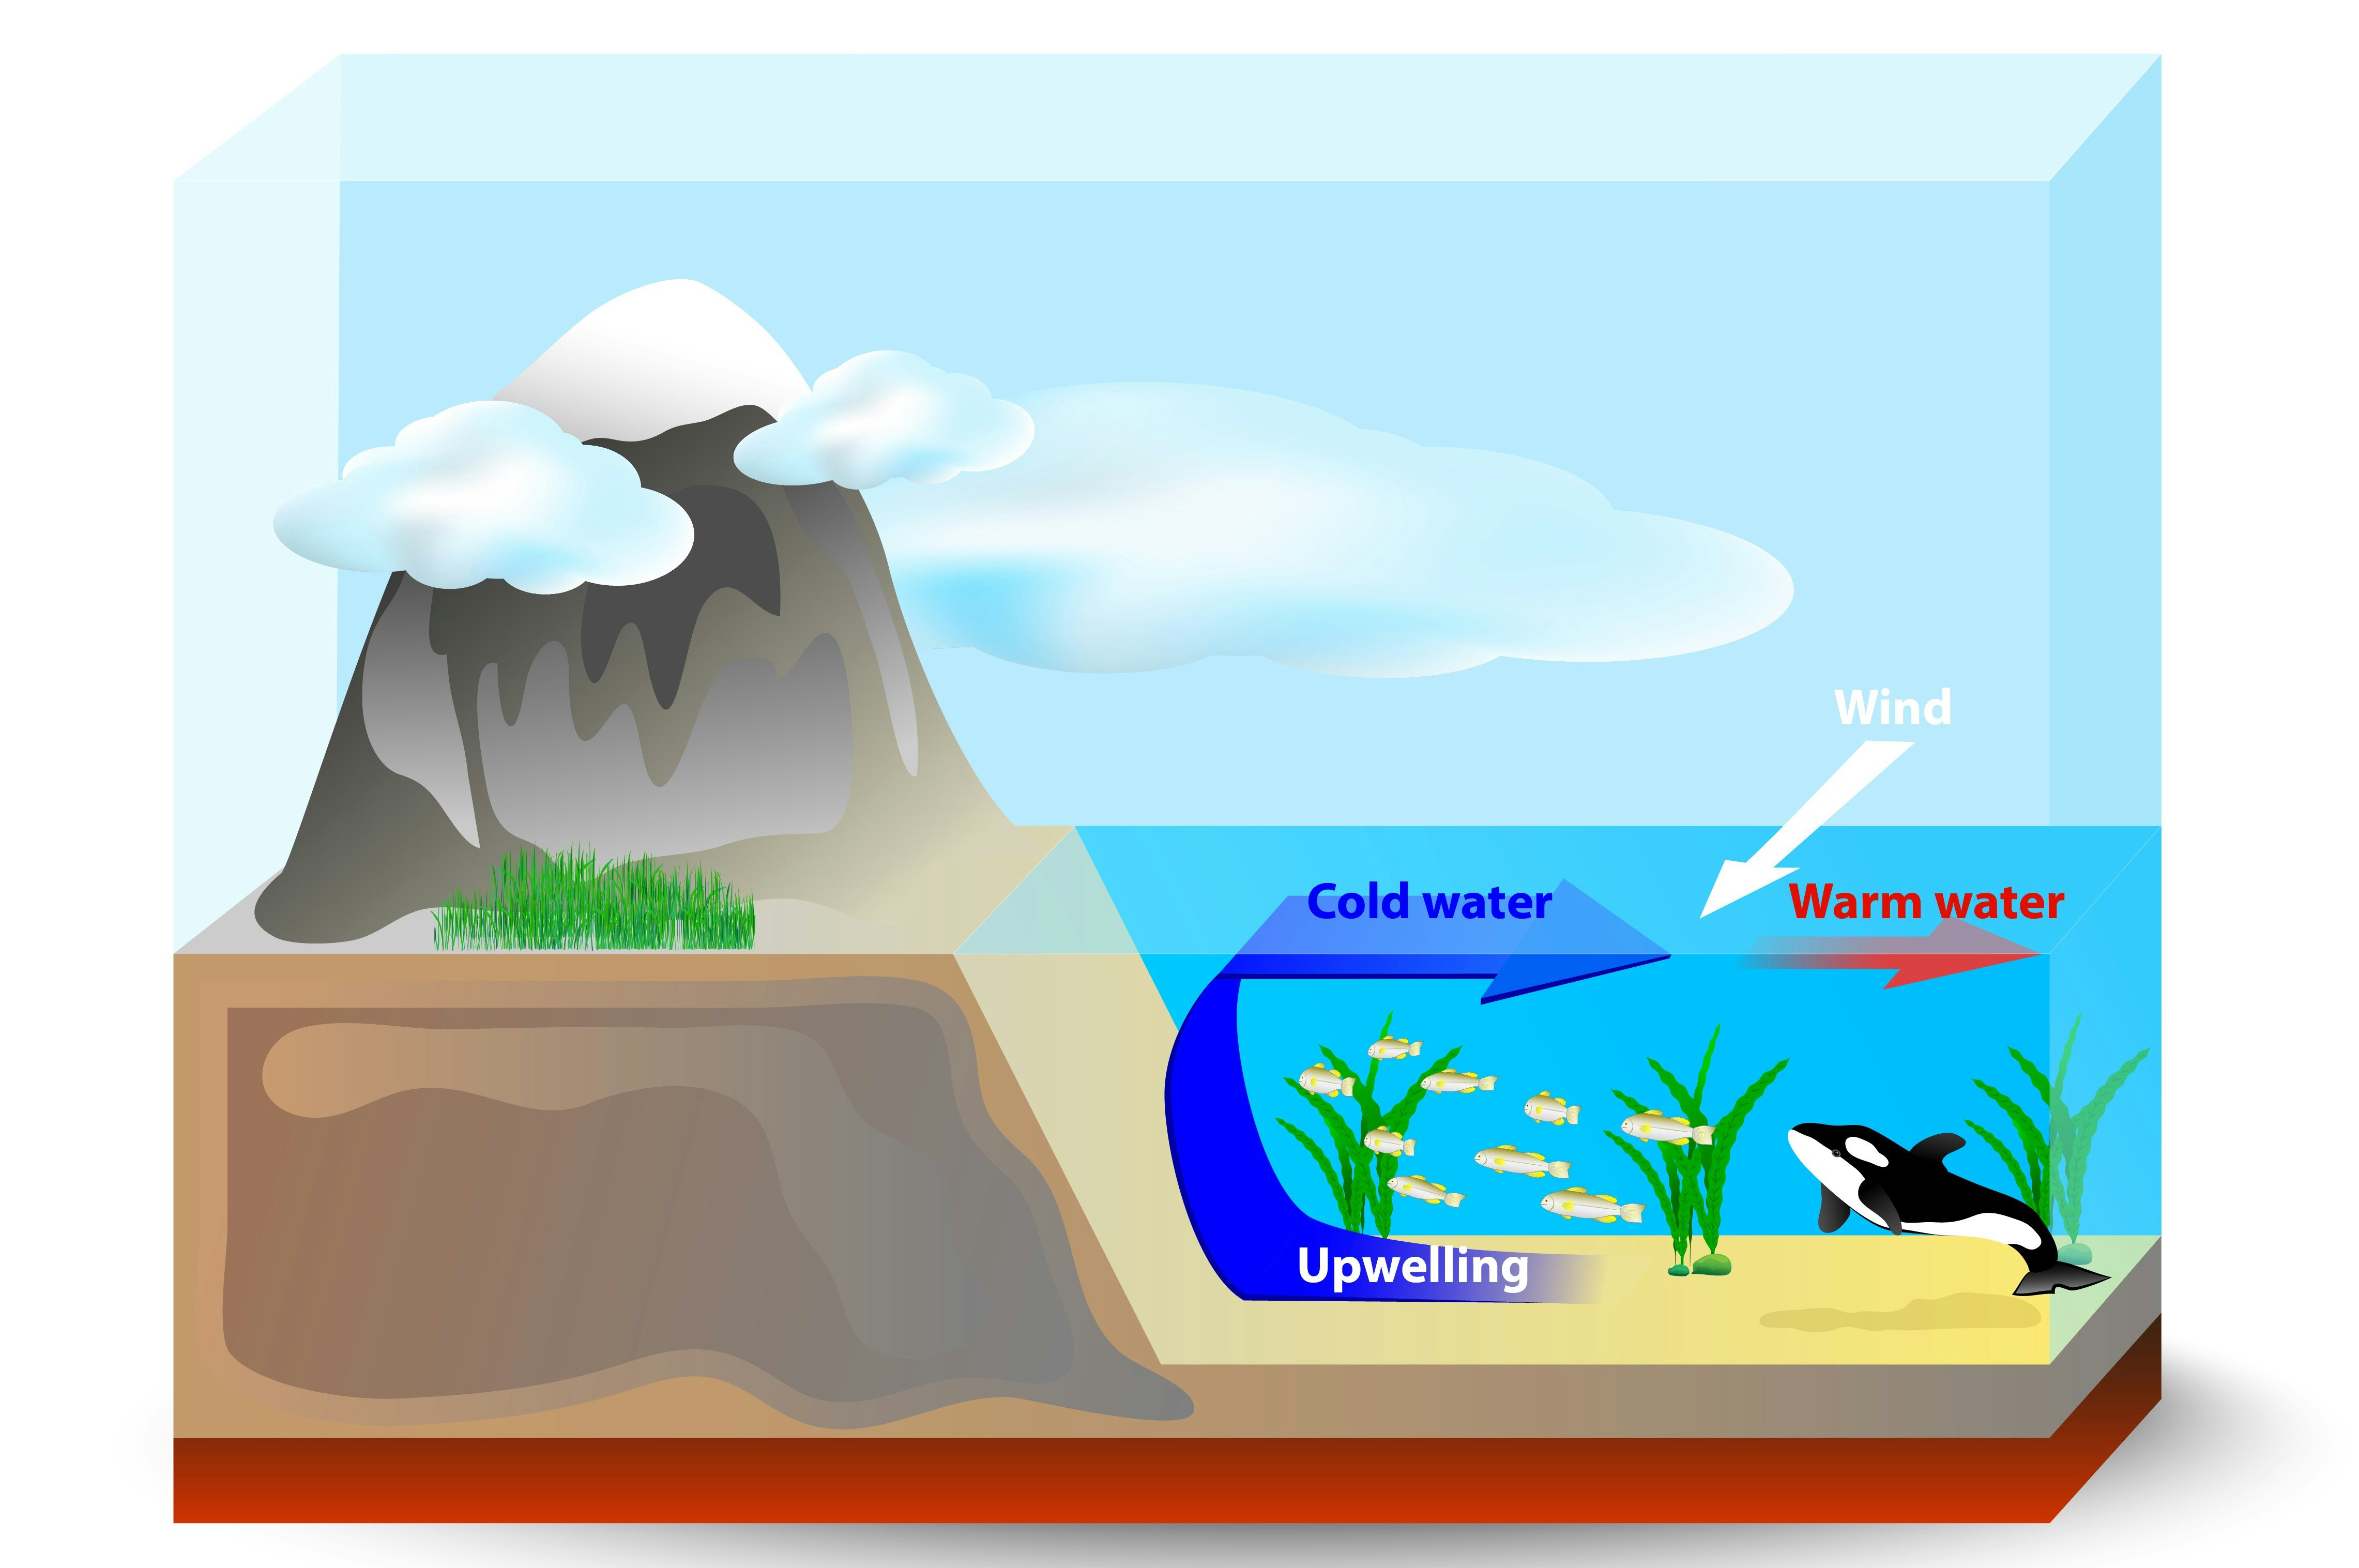 A felszíni és mélytengeri víz keveredésének diagramja, A felfelé ívelő áramlatok hideg vizet hoznak az óceán fenekéről a felszínre